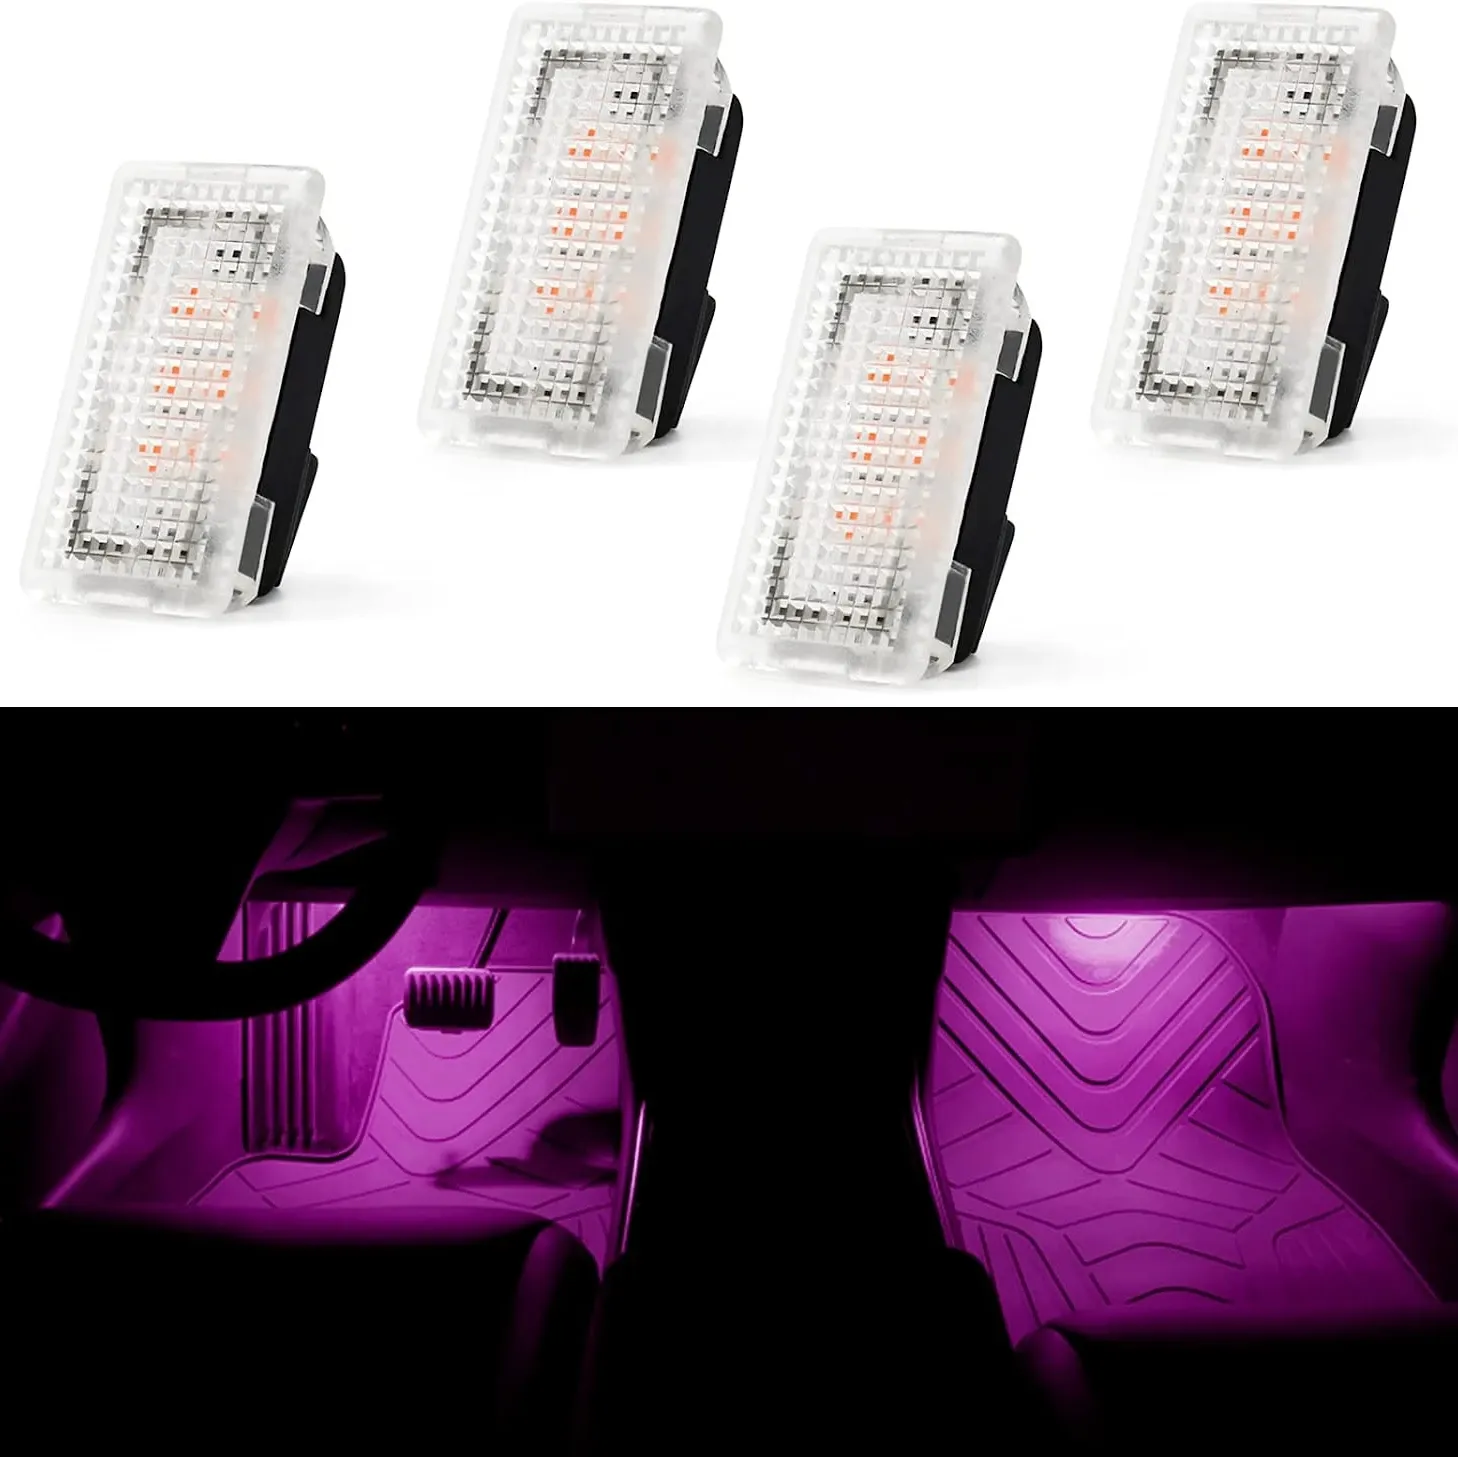 Автомобили для Tesla Model S X Y 3 светодиодные лампы внутреннего освещения неоновый пол багажник для ног автомобиля атмосфера окружающее освещение украшения стайлинга автомобилей